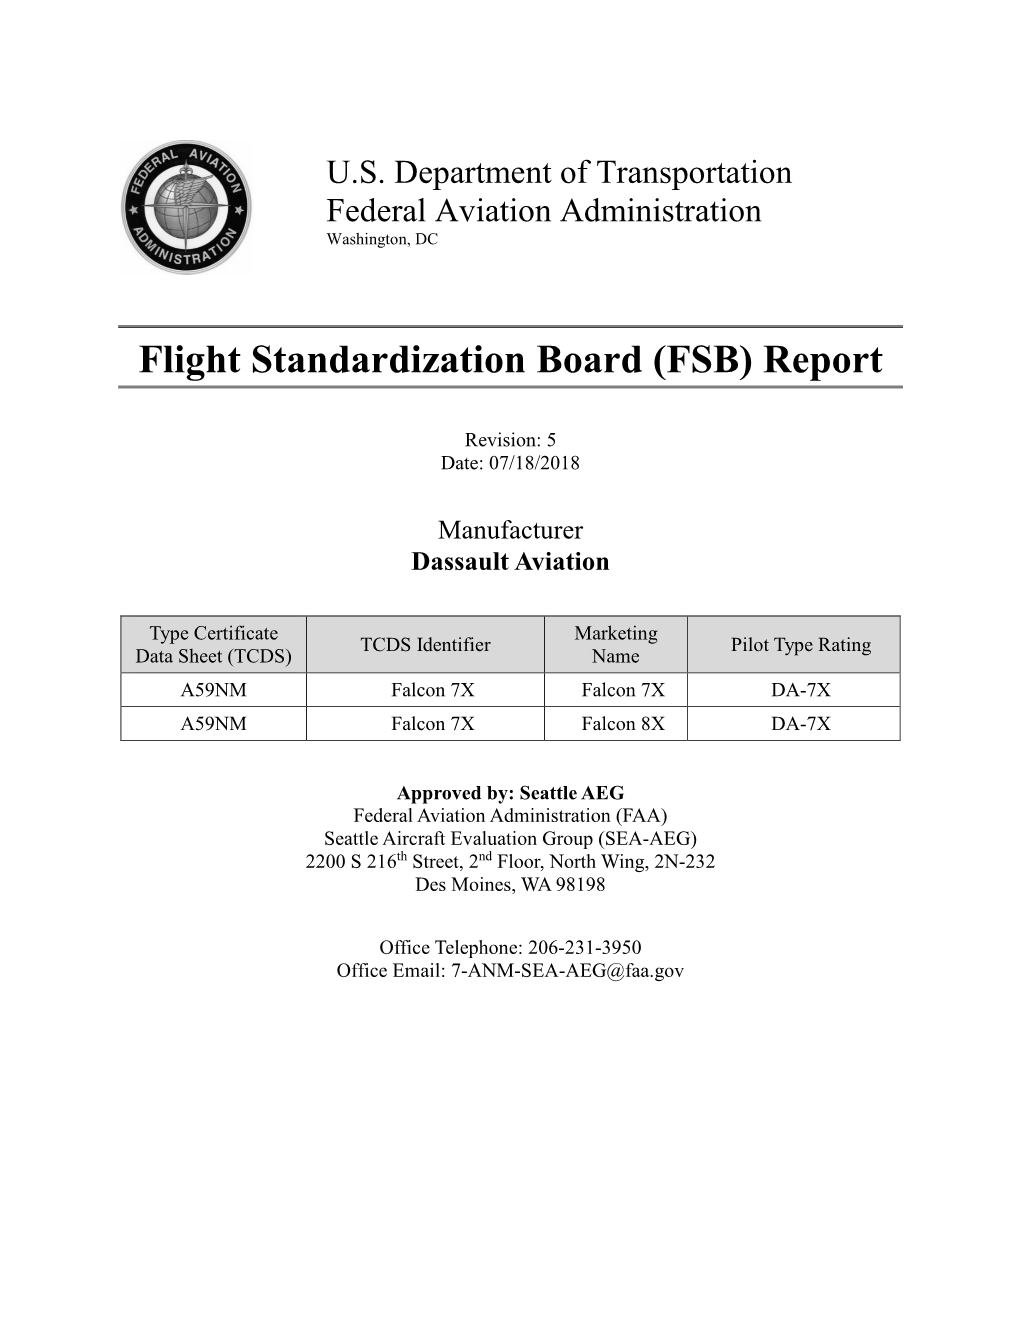 Flight Standardization Board (FSB) Report